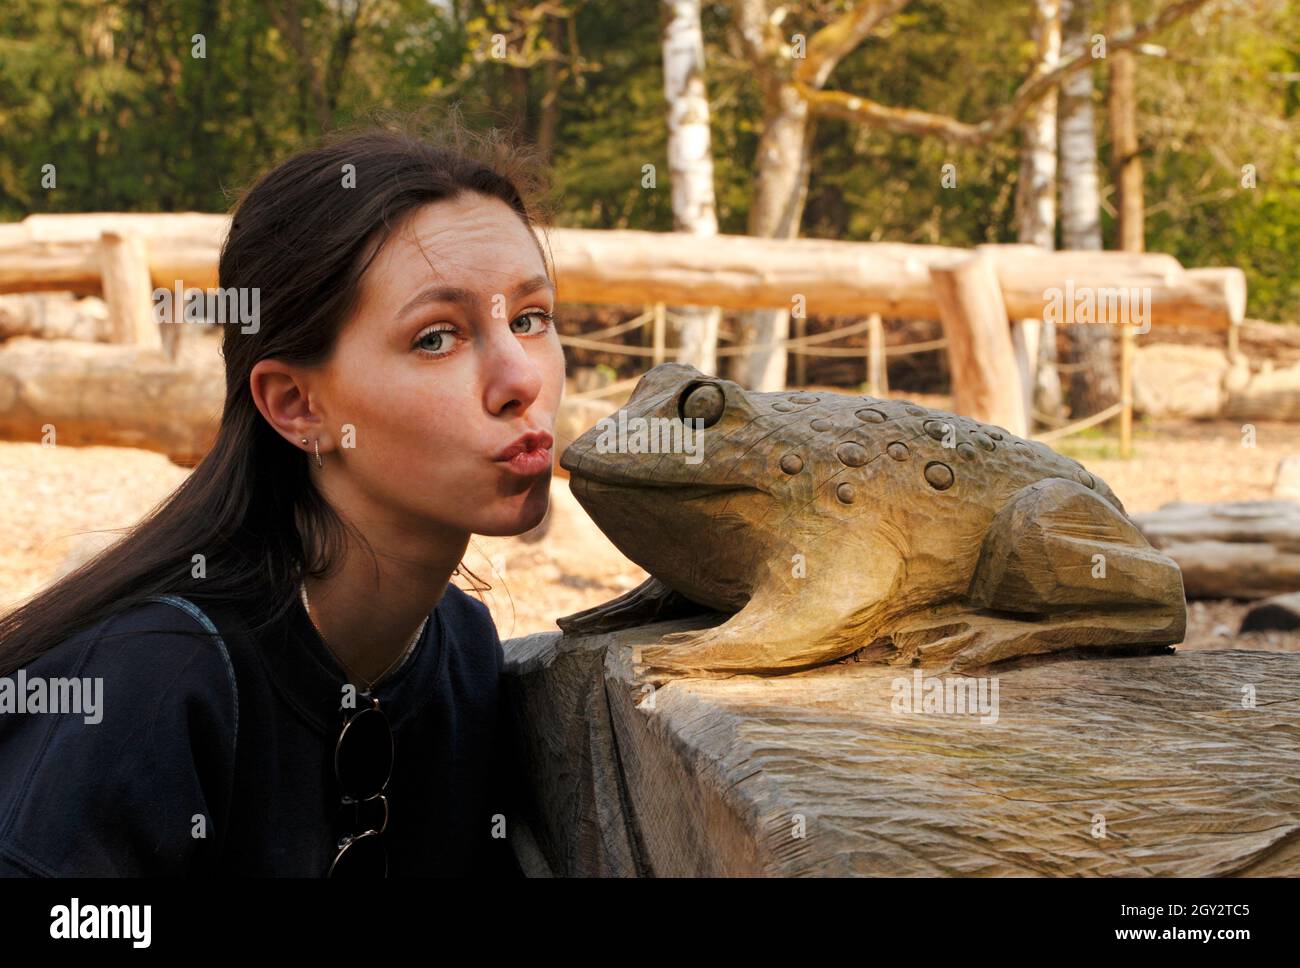 Ein junges Mädchen küsst einen Frosch, um ihn in einen hübschen Prinzen zu verwandeln Stockfoto